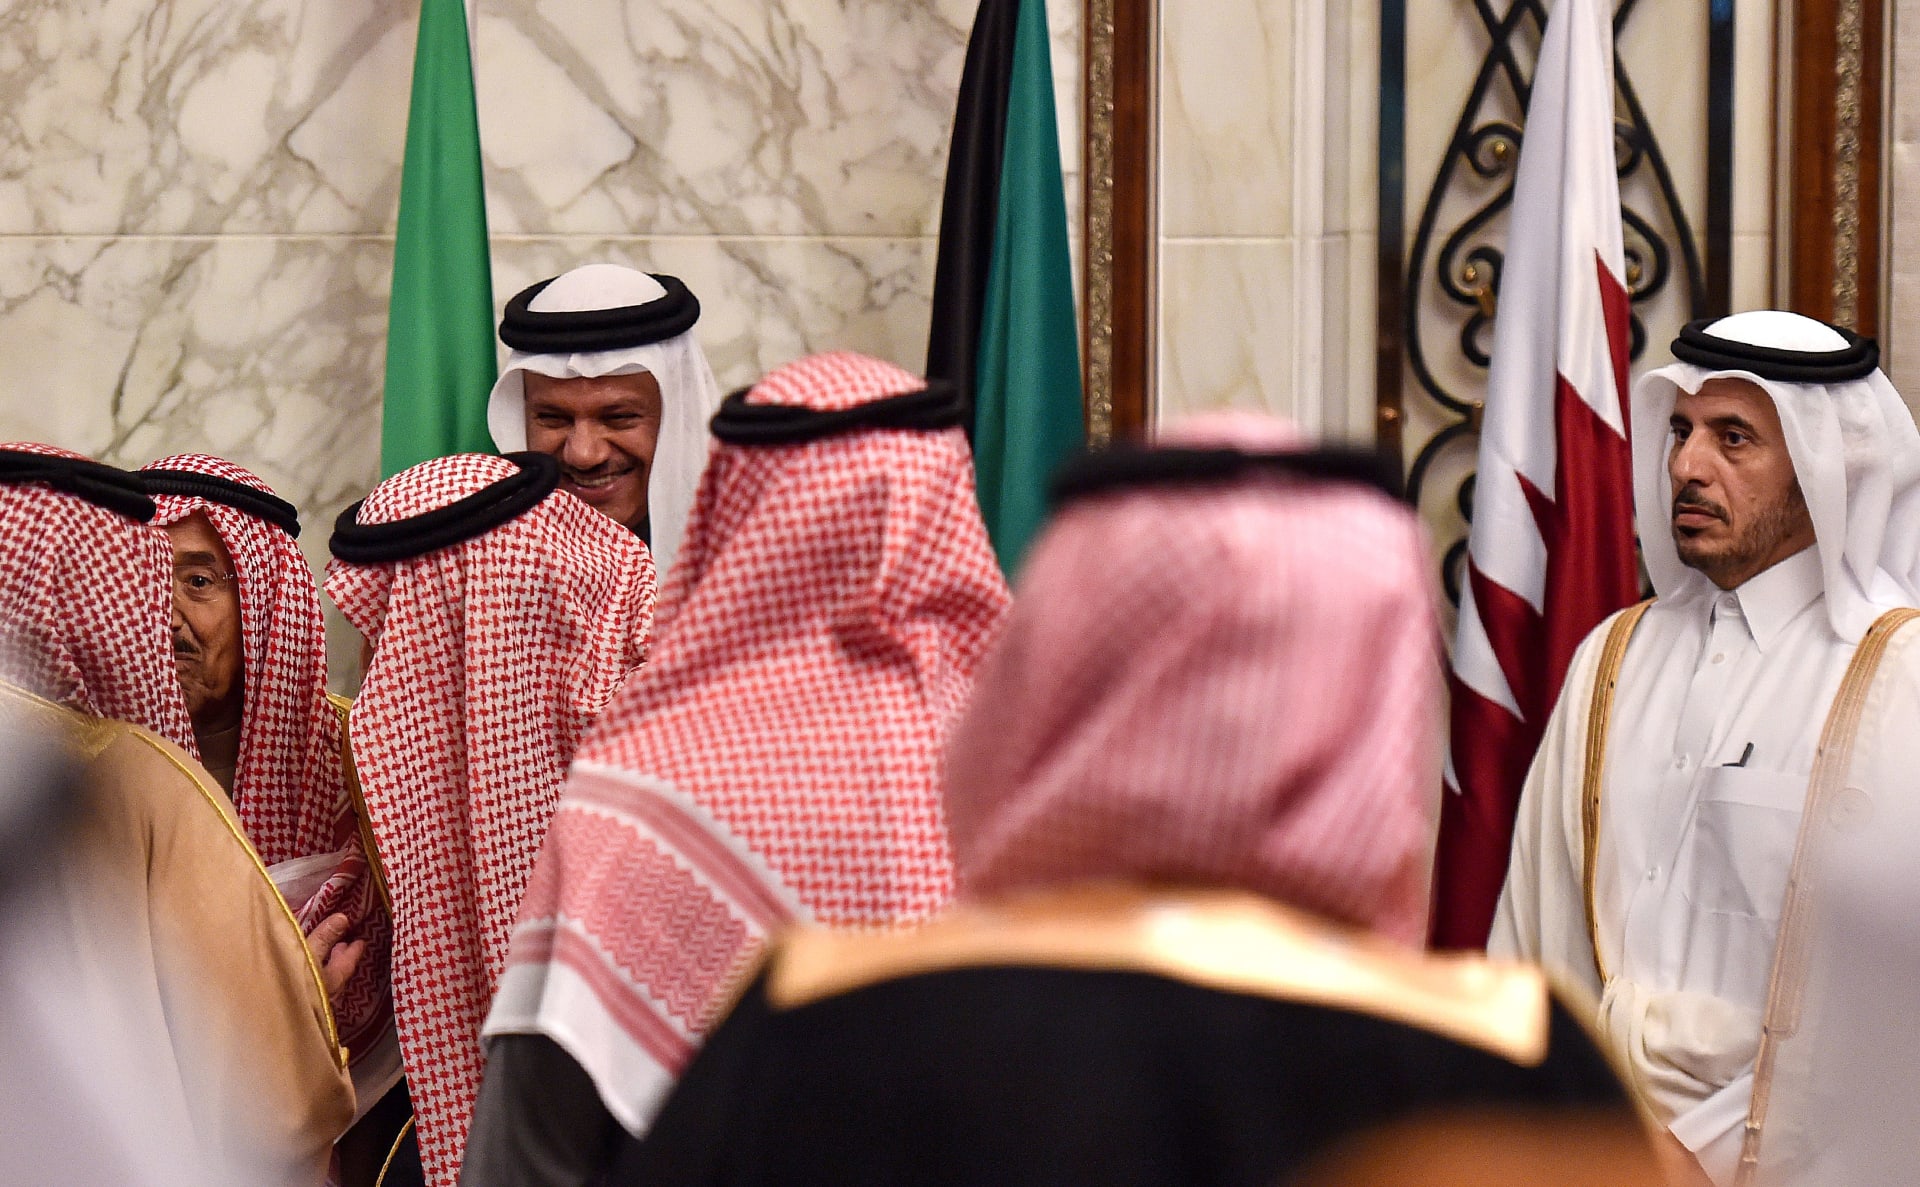 حذف شقيق أمير قطر لتعليق على صورة الملك سلمان ورئيس وزراء قطر يثير تفاعلا